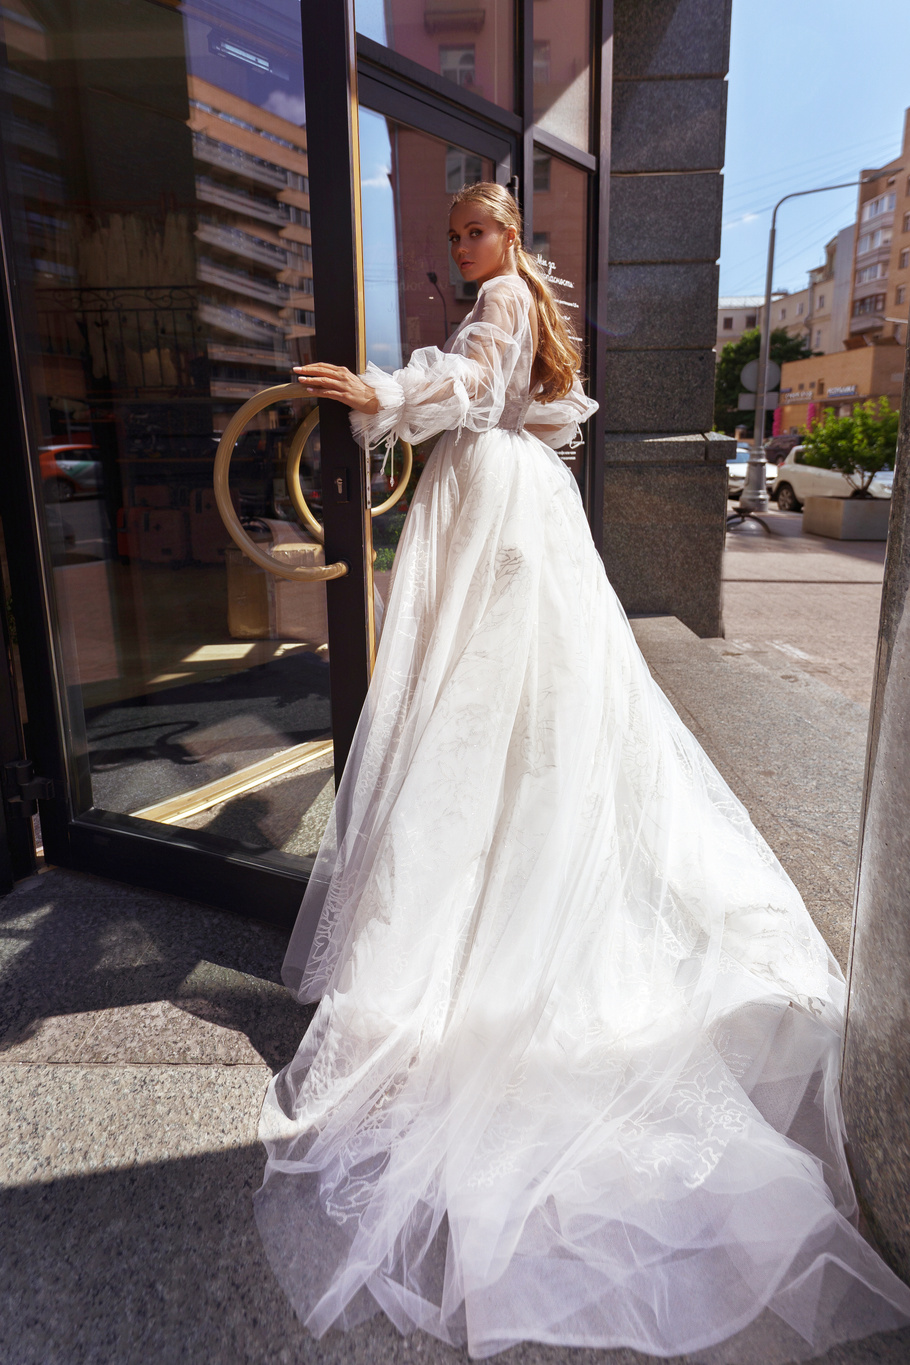 Купить свадебное платье «Миней» Бламмо Биамо из коллекции Нимфа 2020 года в Нижнем Новгороде